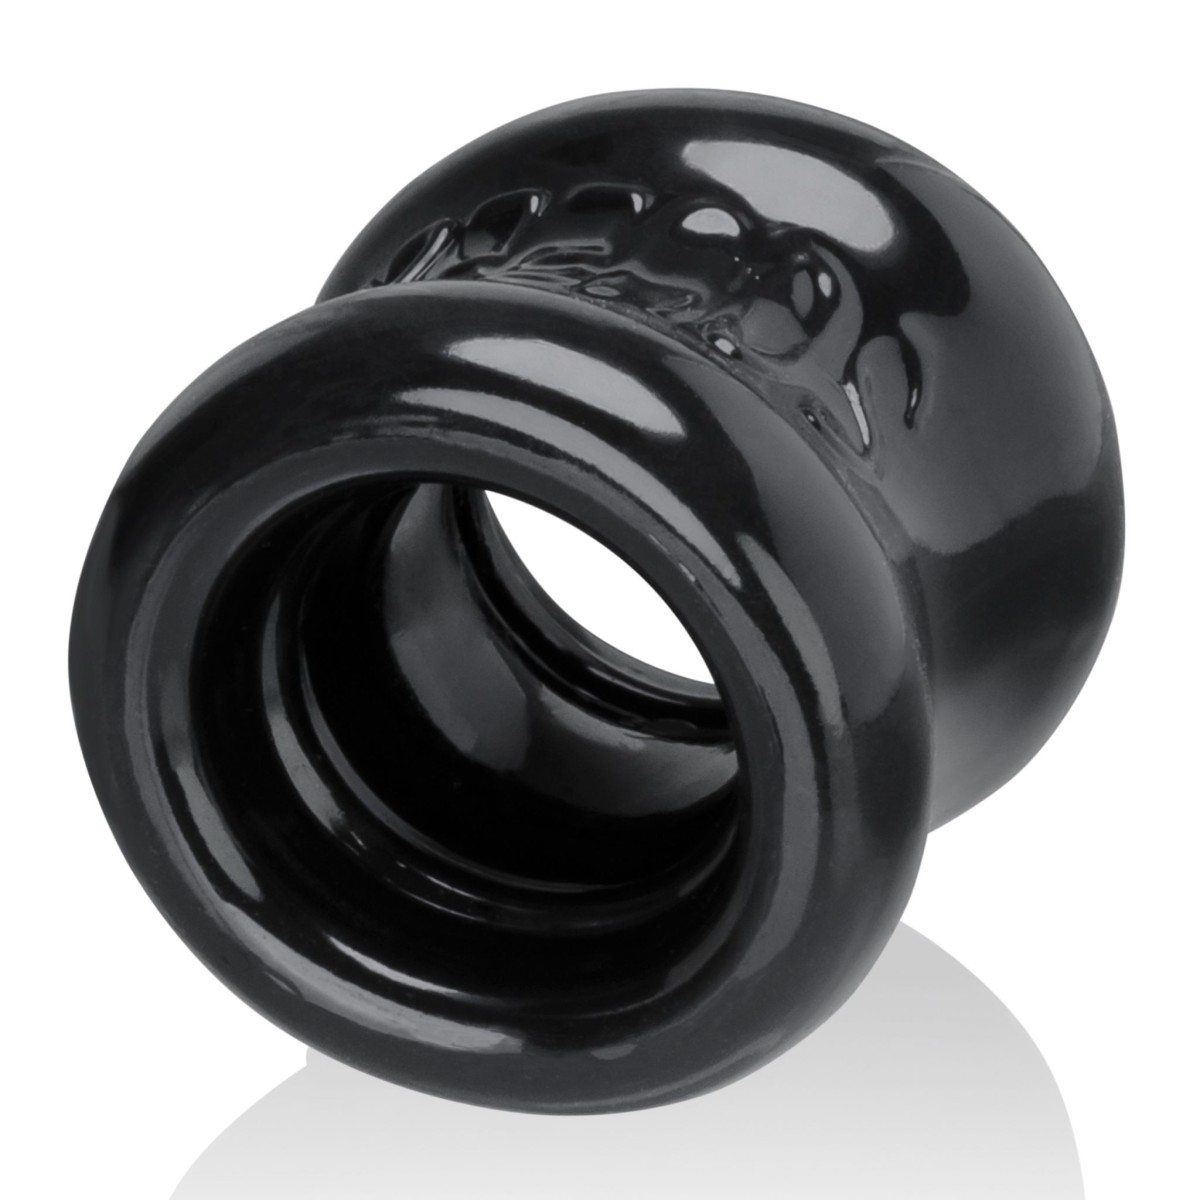 Natahovač varlat Oxballs Squeeze černý, natahovač varlat 4,8 cm